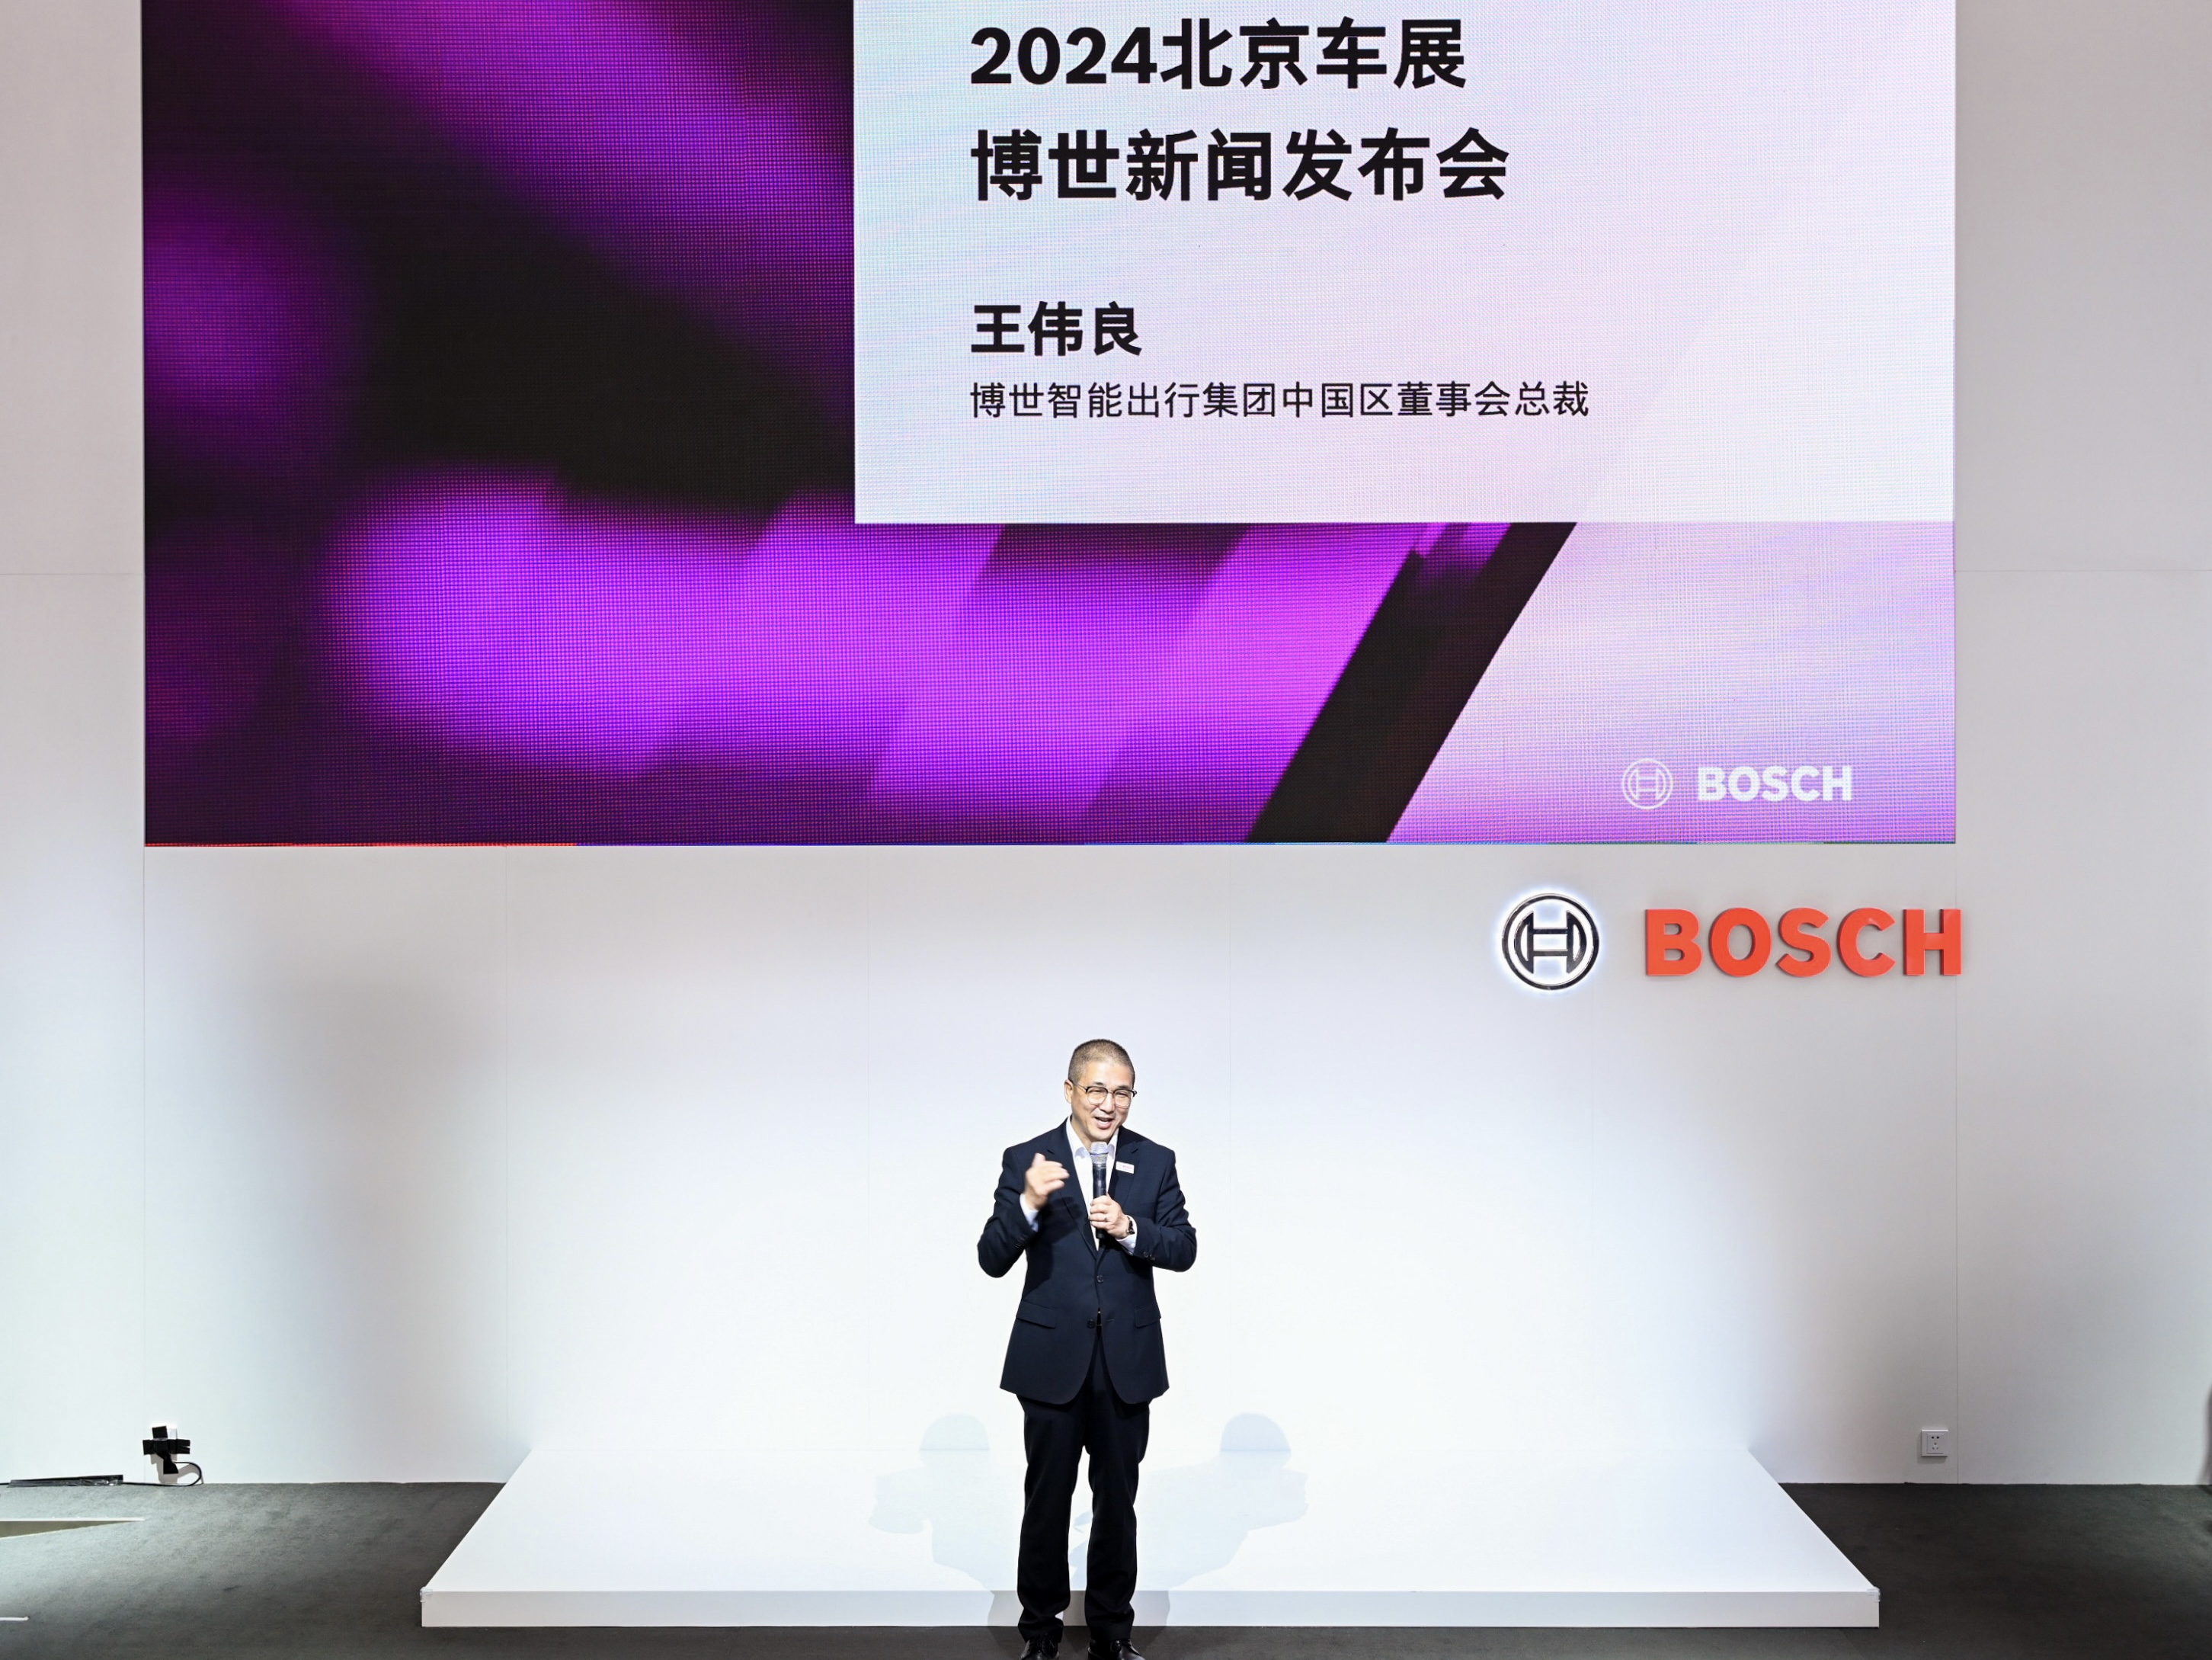 04 博世智能出行集团中国区董事会总裁王伟良 Weiliang Wang, President of Bosch Mobility Board China.jpg